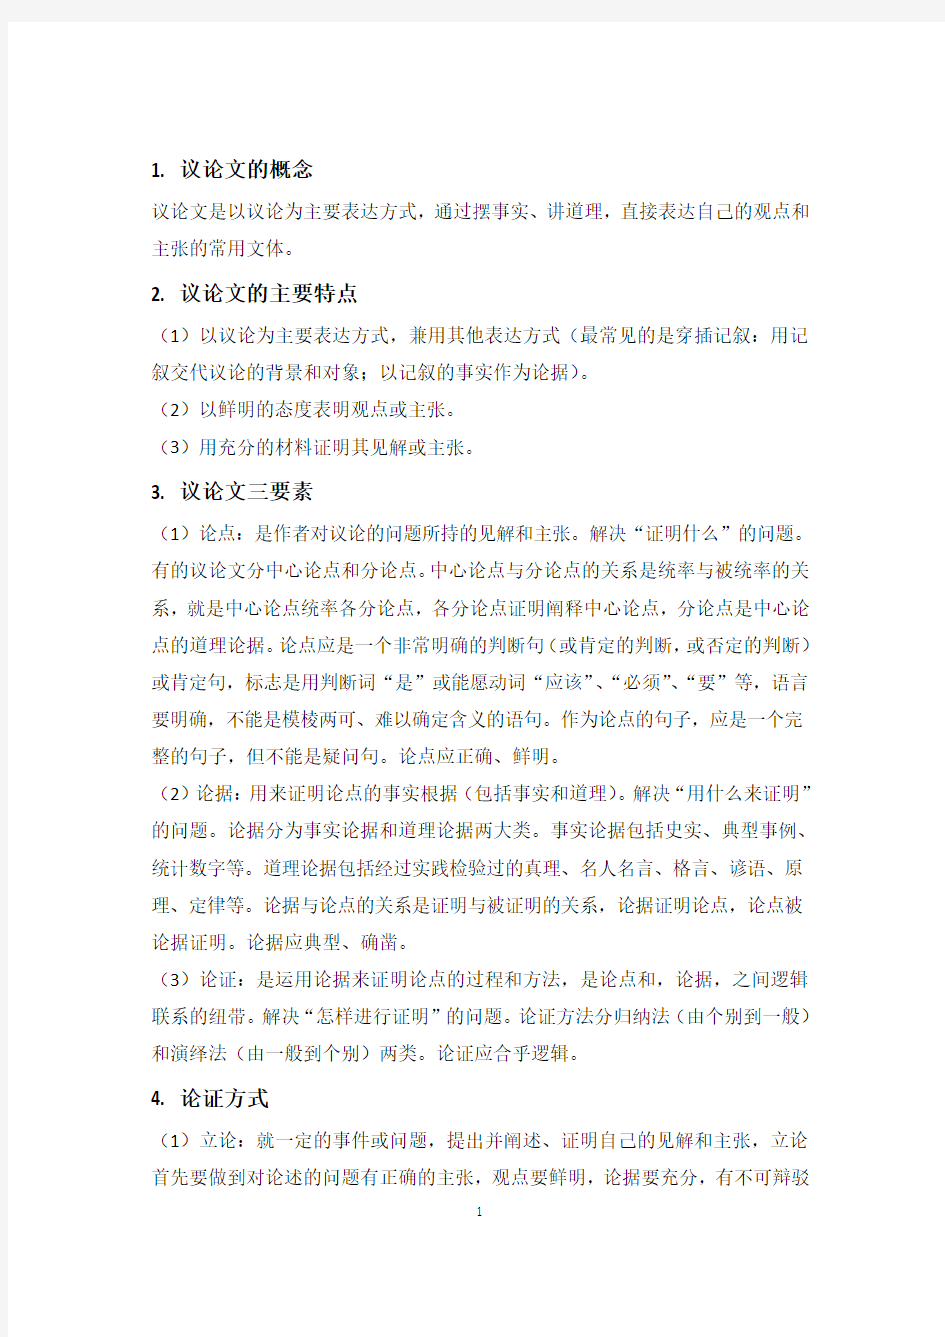 【精选】初中语文《议论文阅读》知识点总结